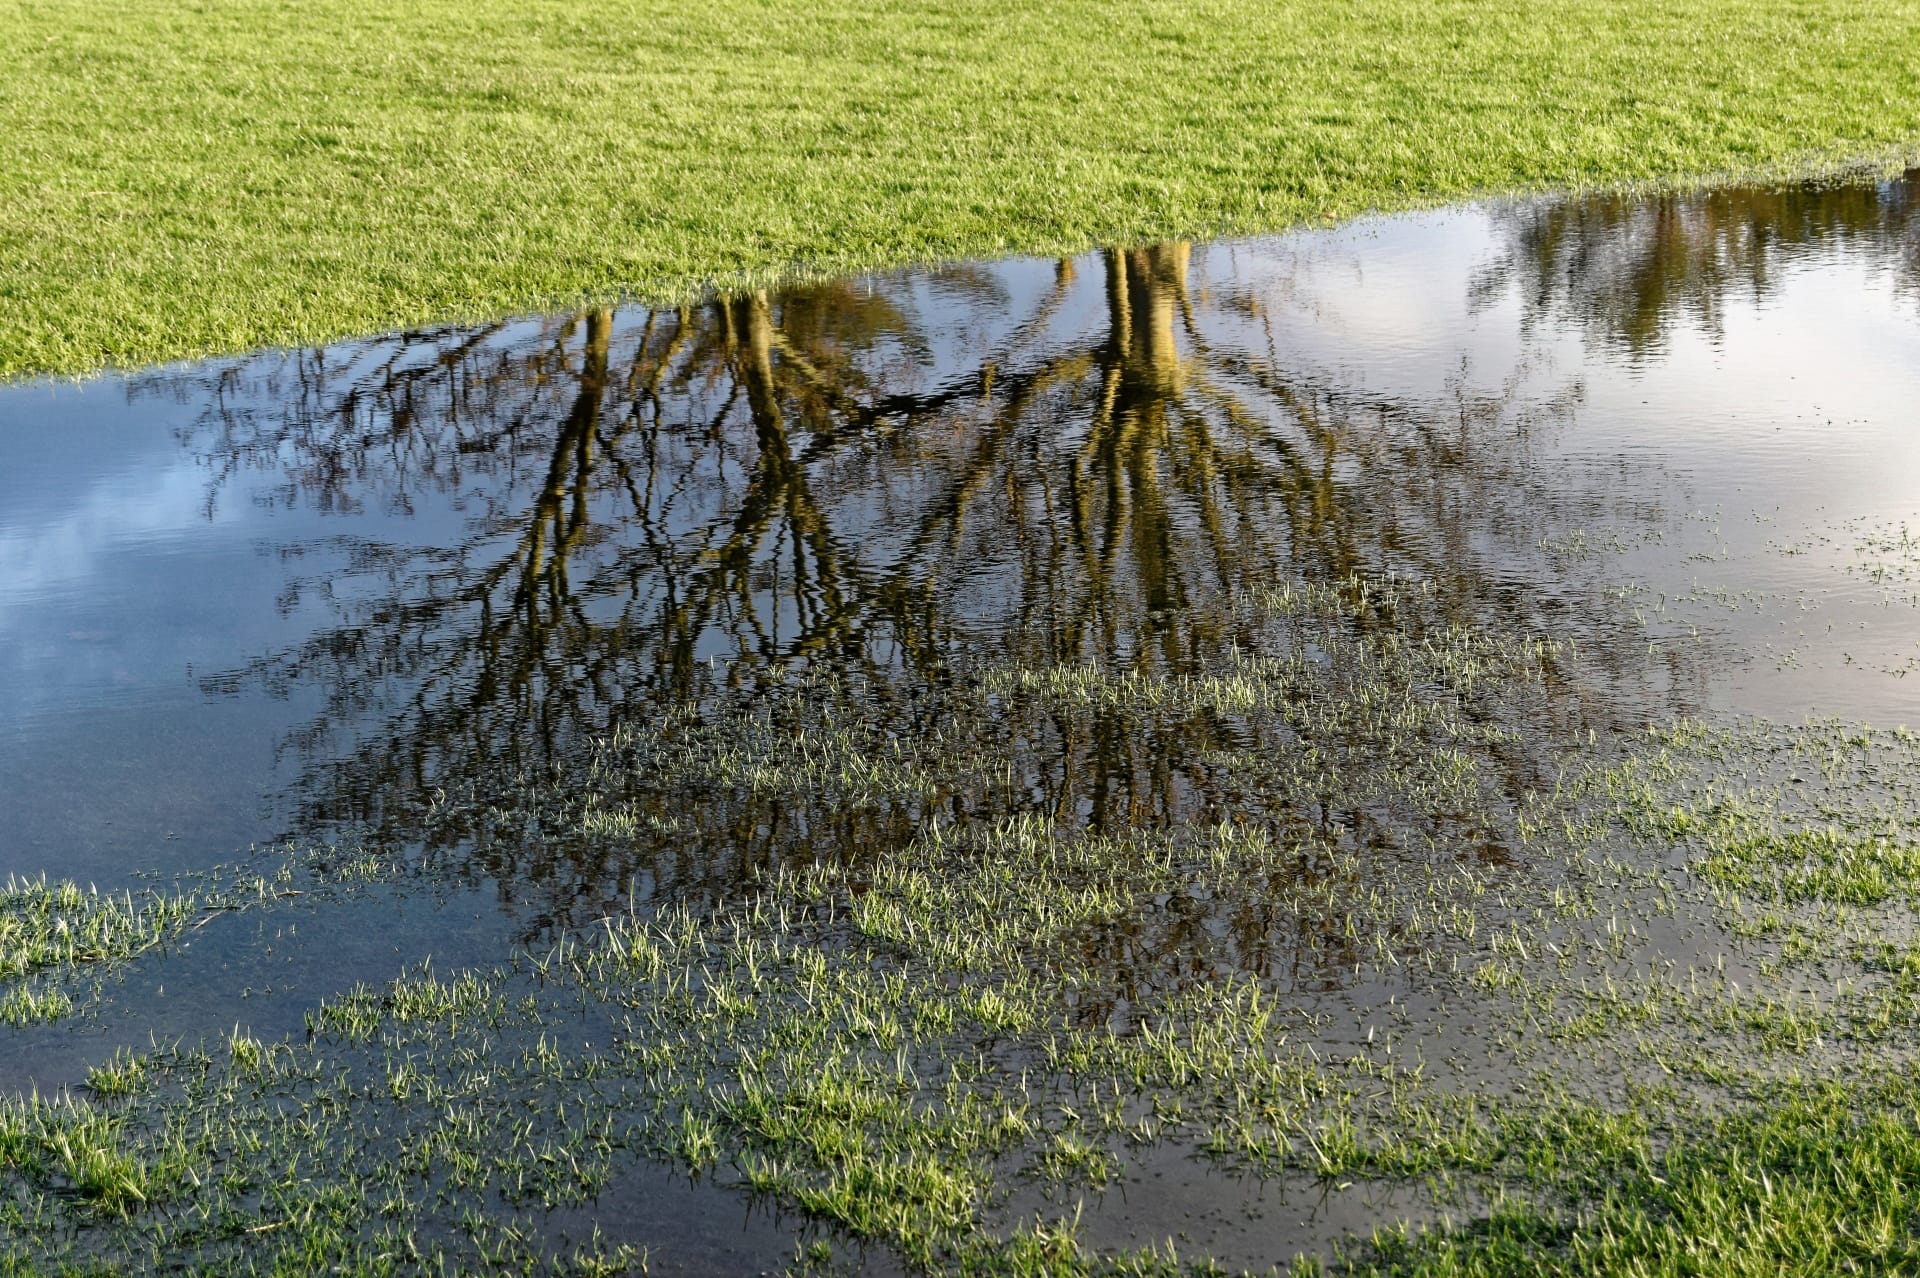 Flooded Lawn